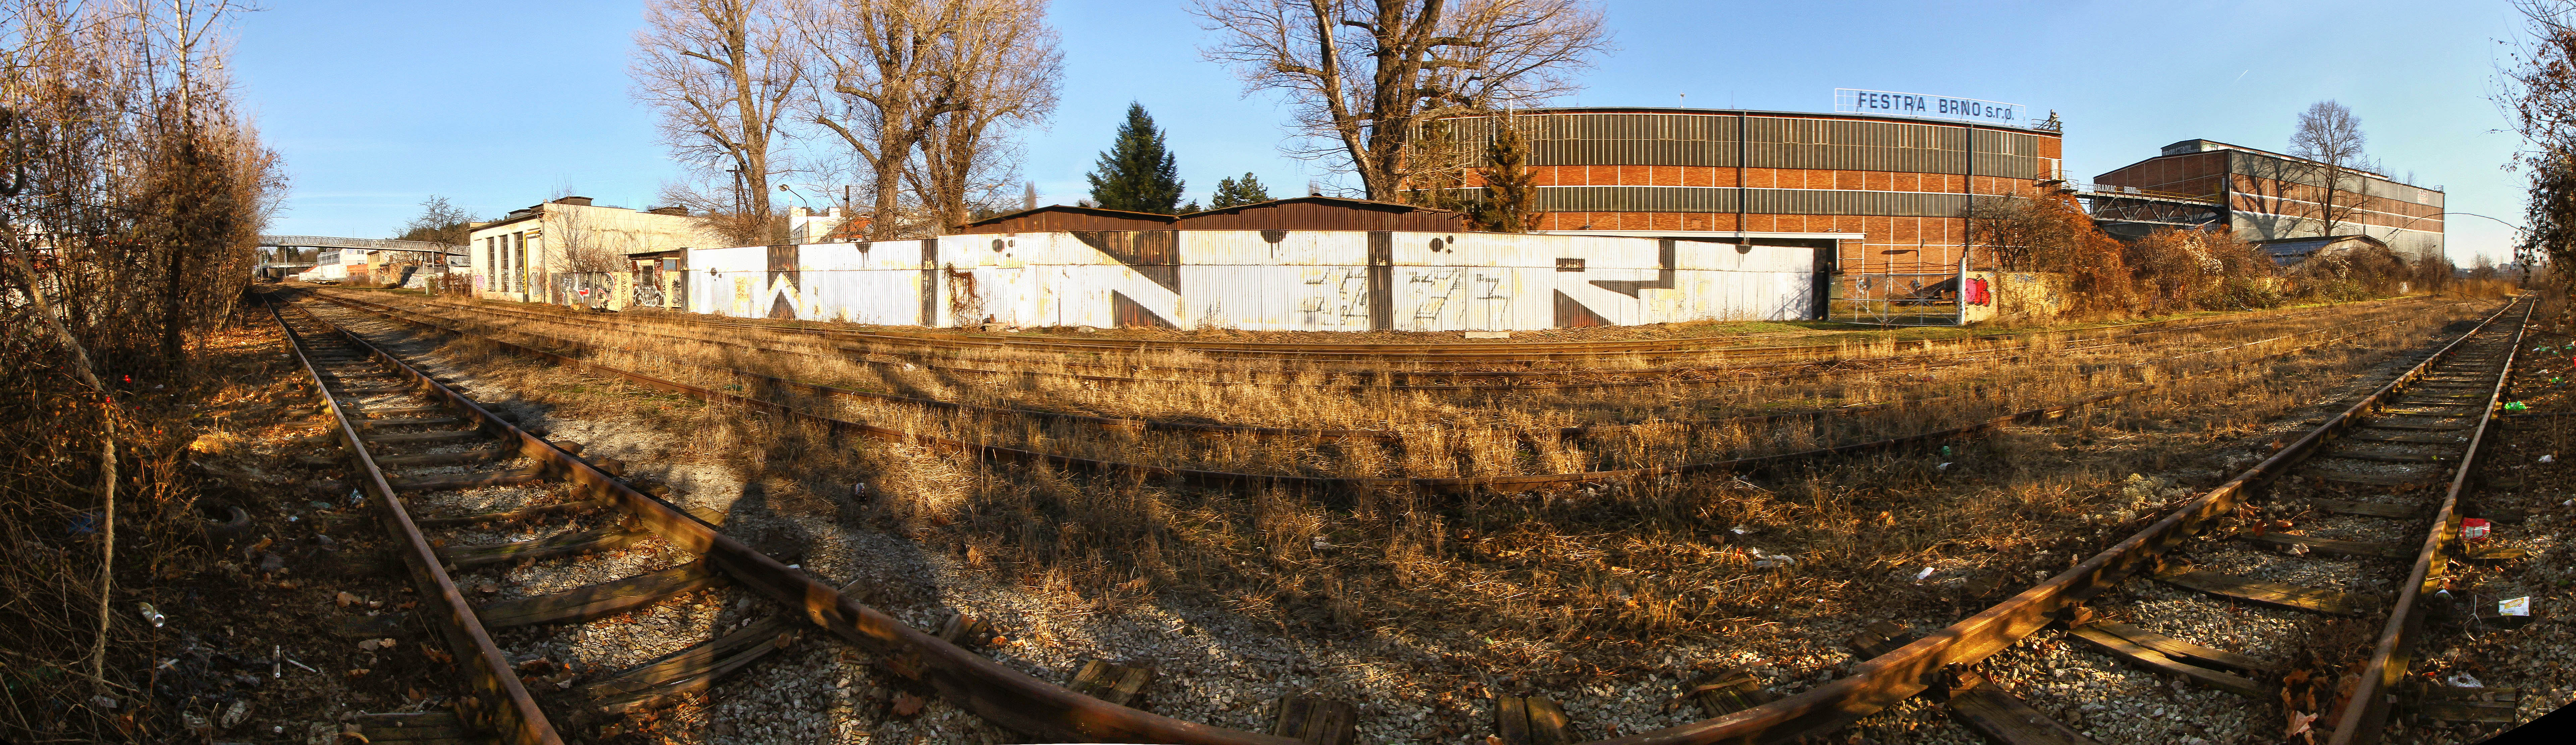 Celkové panorama bývalé stanice Královo Pole (později Brno-Královo Pole), dnes obvodu stré nádraží zhruba z místa, kde kdysi stávala staniční budova (fotograf se nachází cca 100 m jižné od zbourané nádražní budovy).